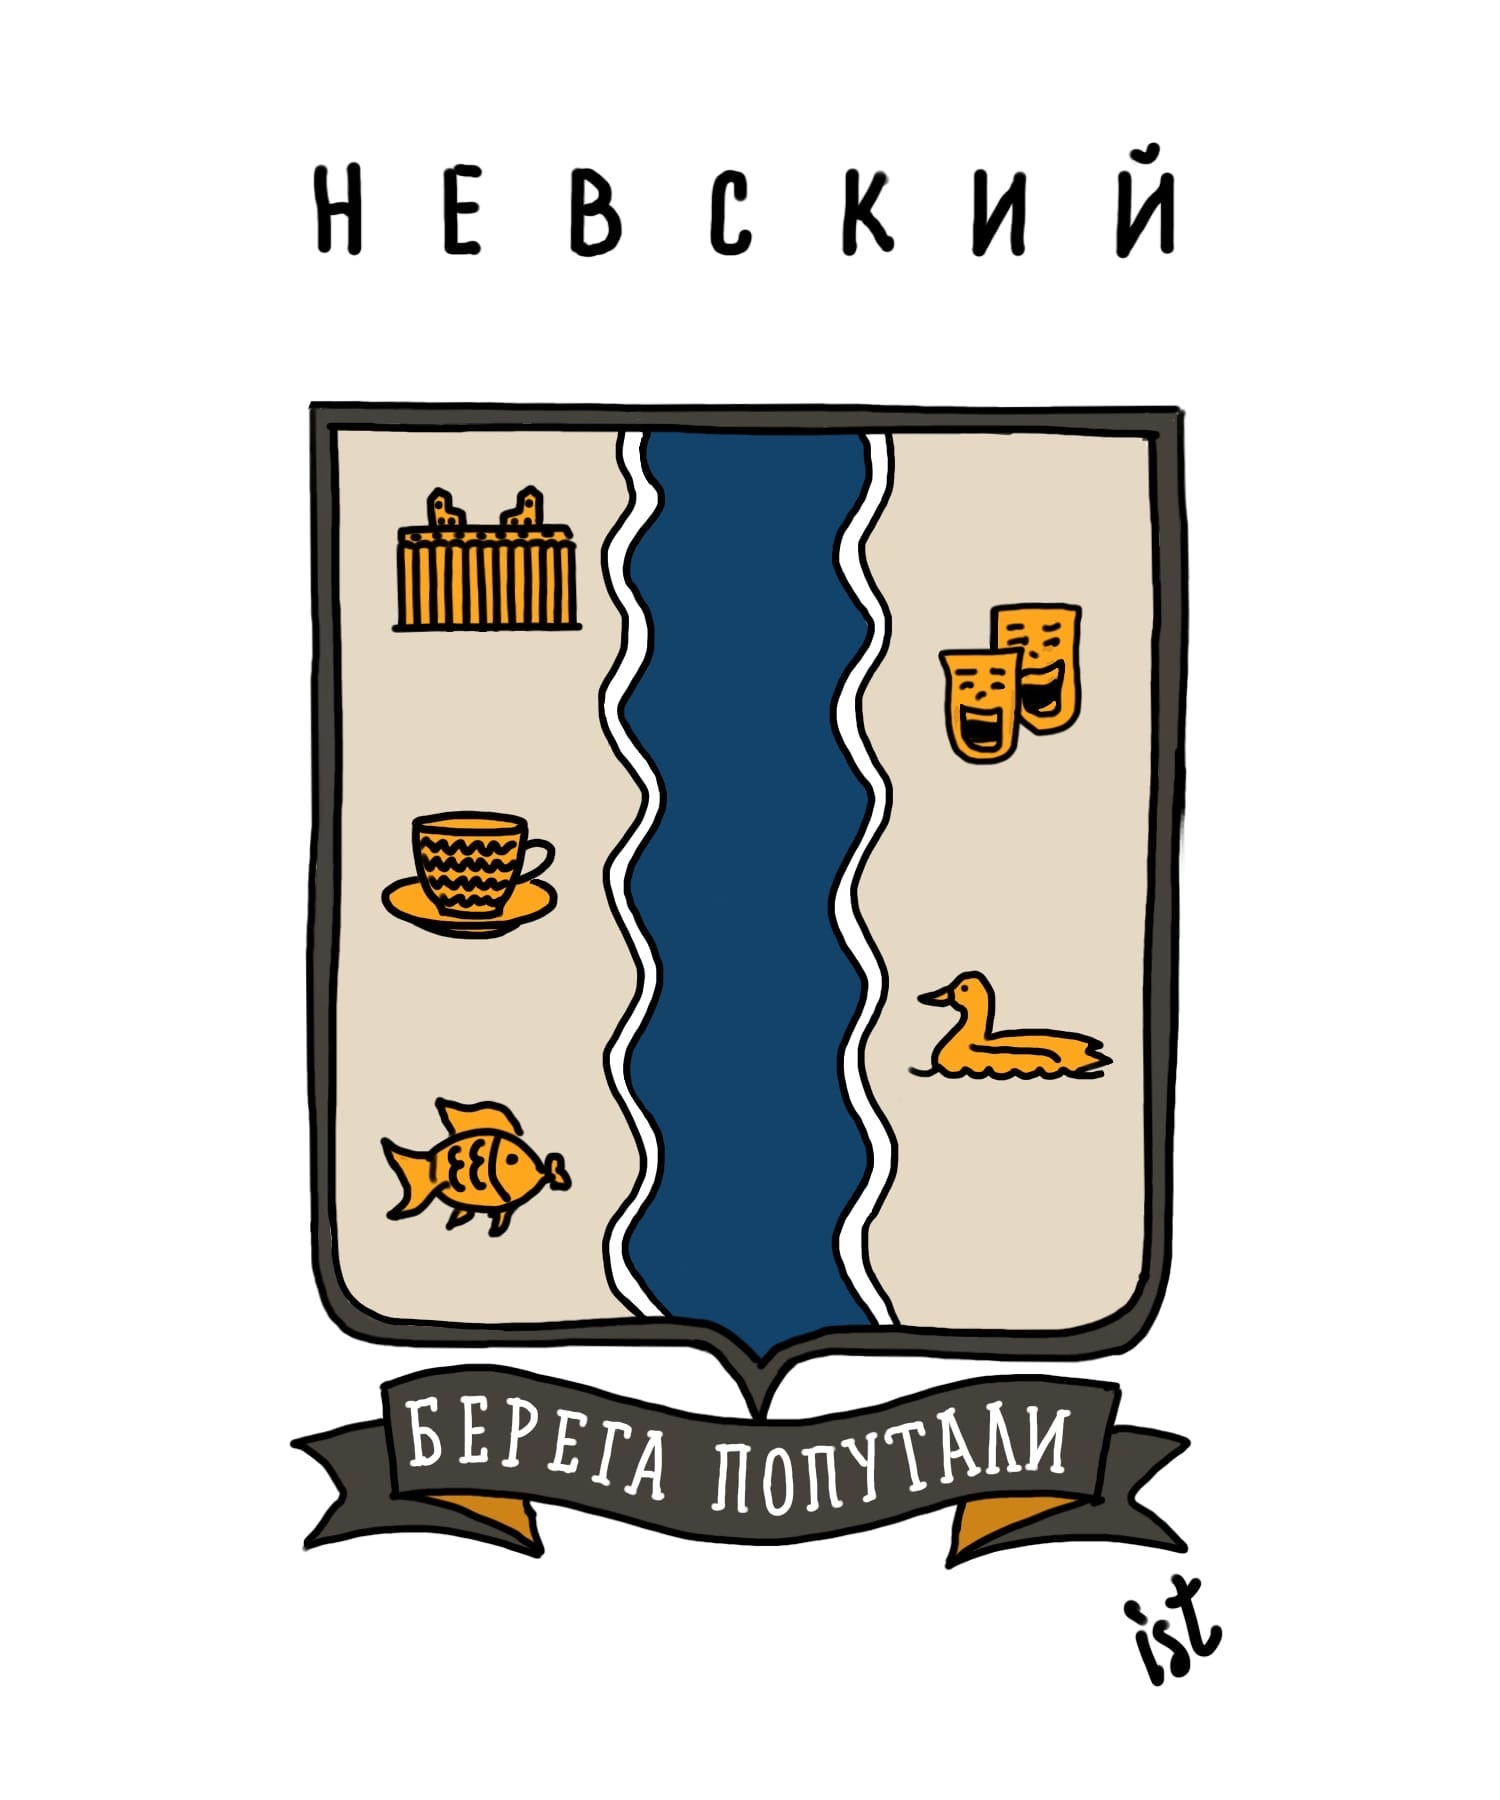 Шуточные гербы петербургских районов